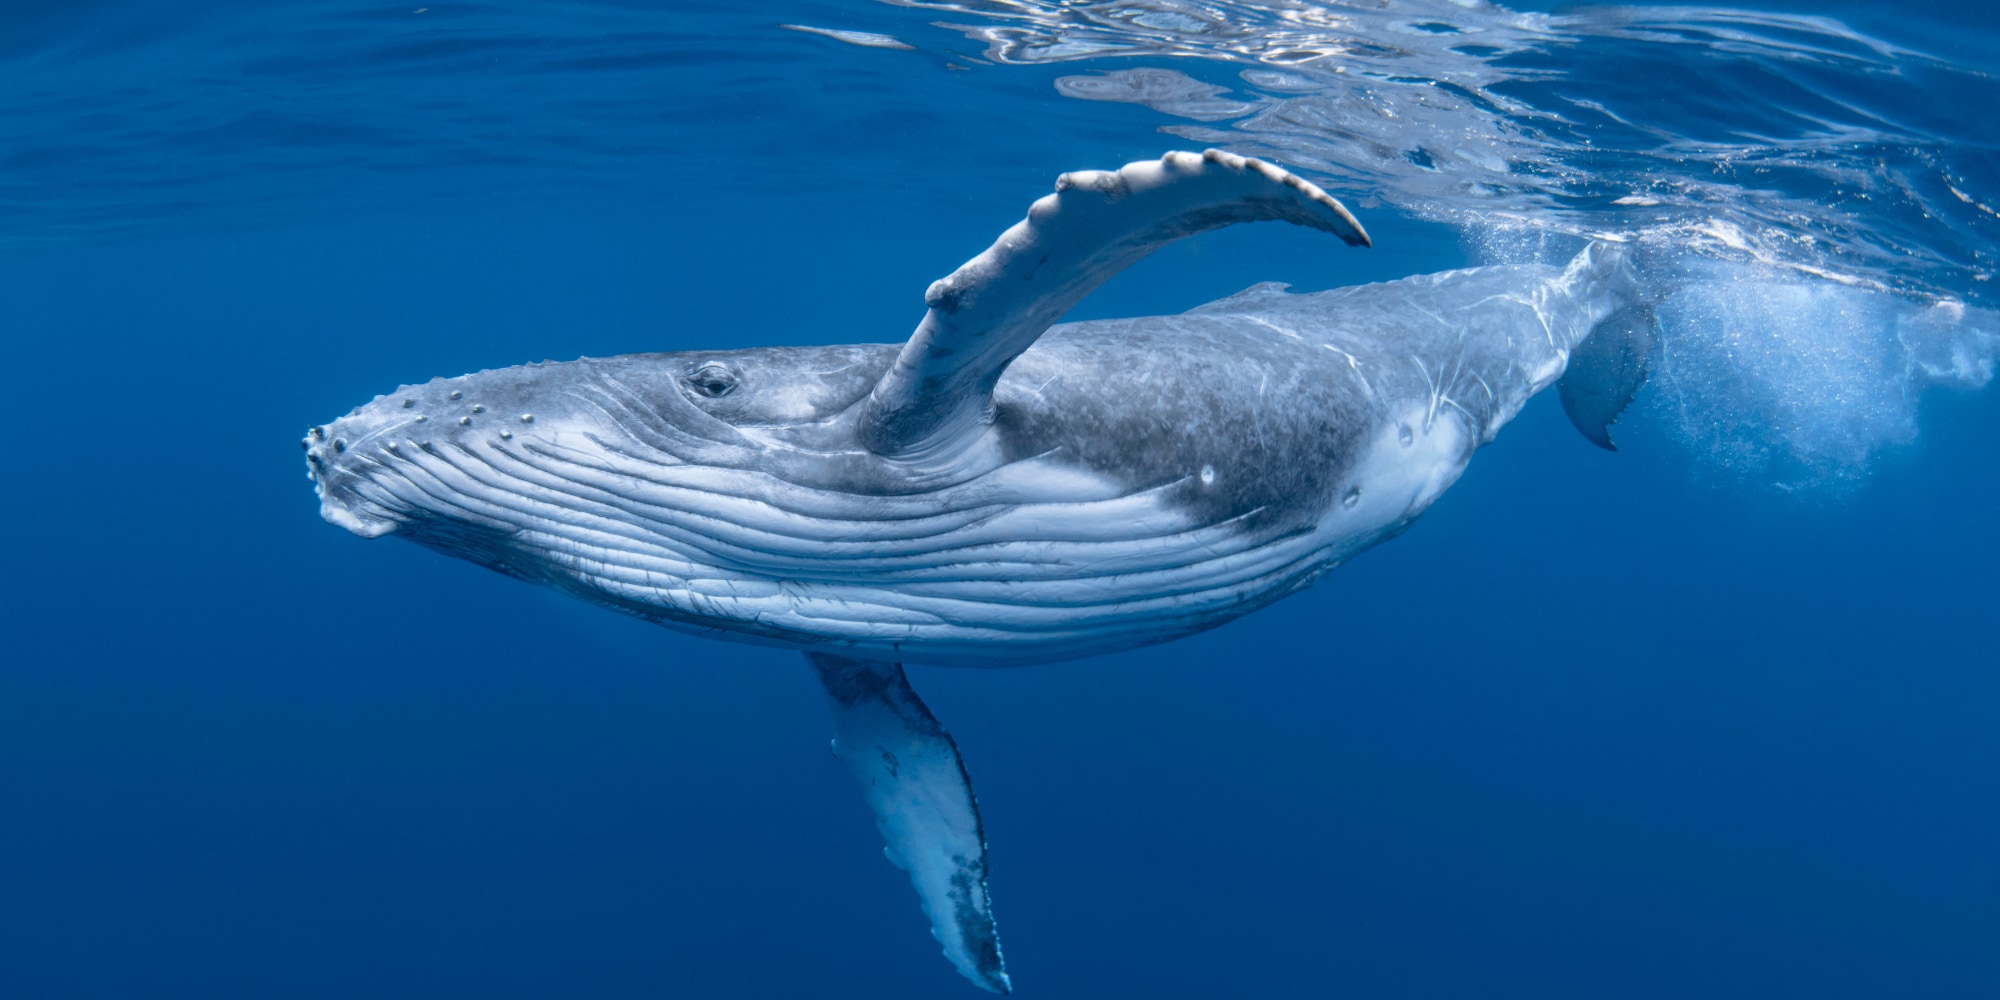 ザトウクジラの歌は太平洋を横断する